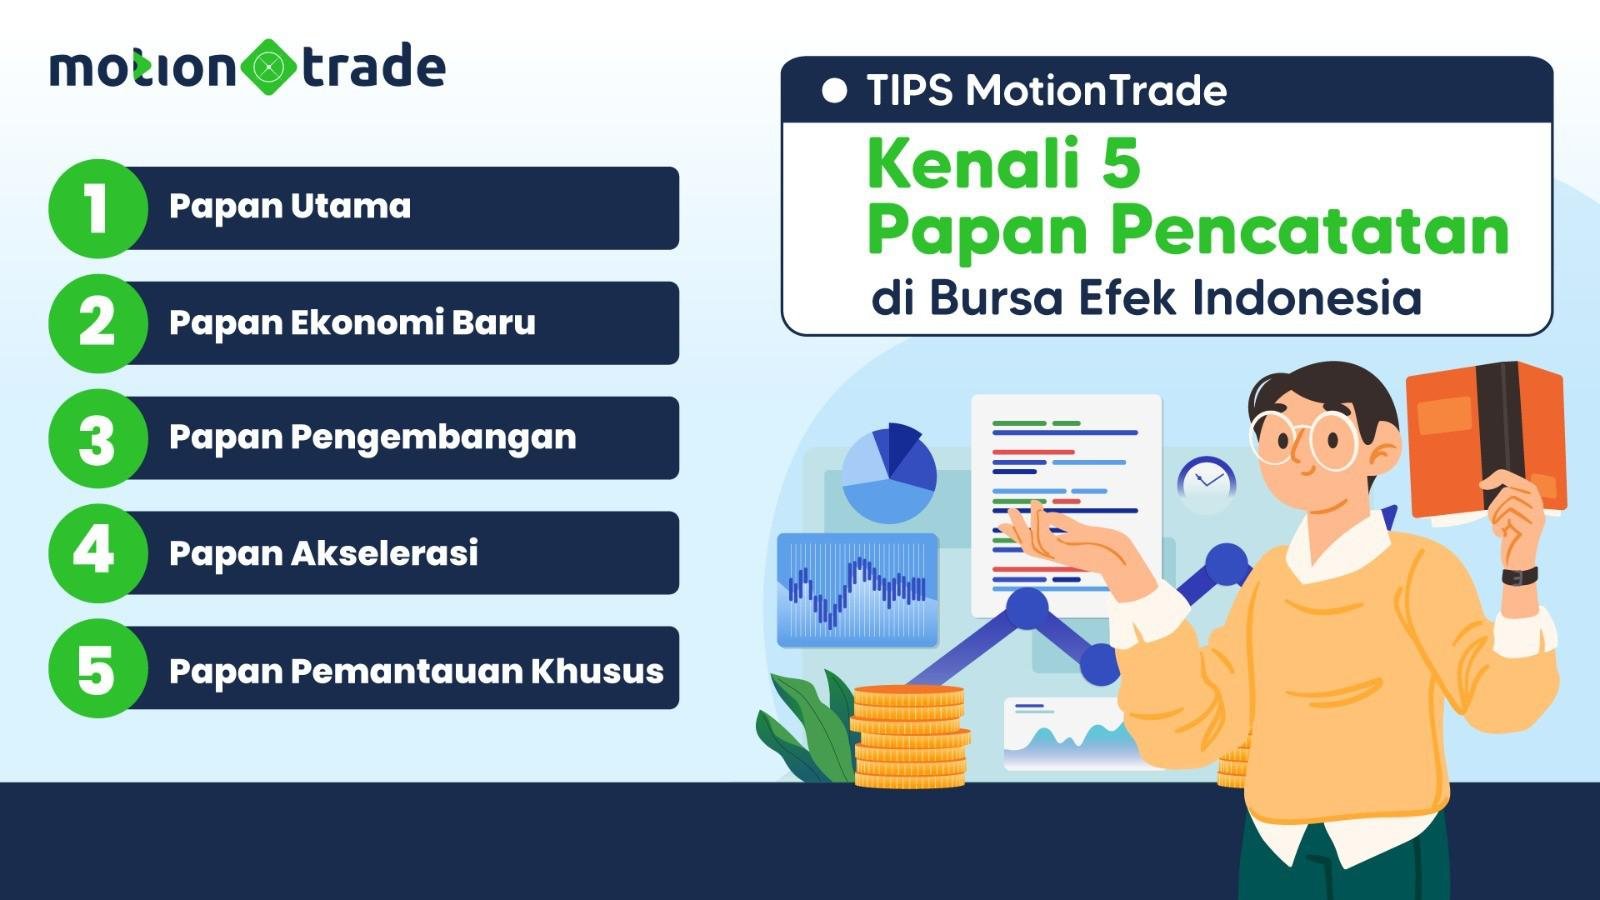 Tips MotionTrade: Kenali Lima Papan Pencatatan di Bursa Efek Indonesia